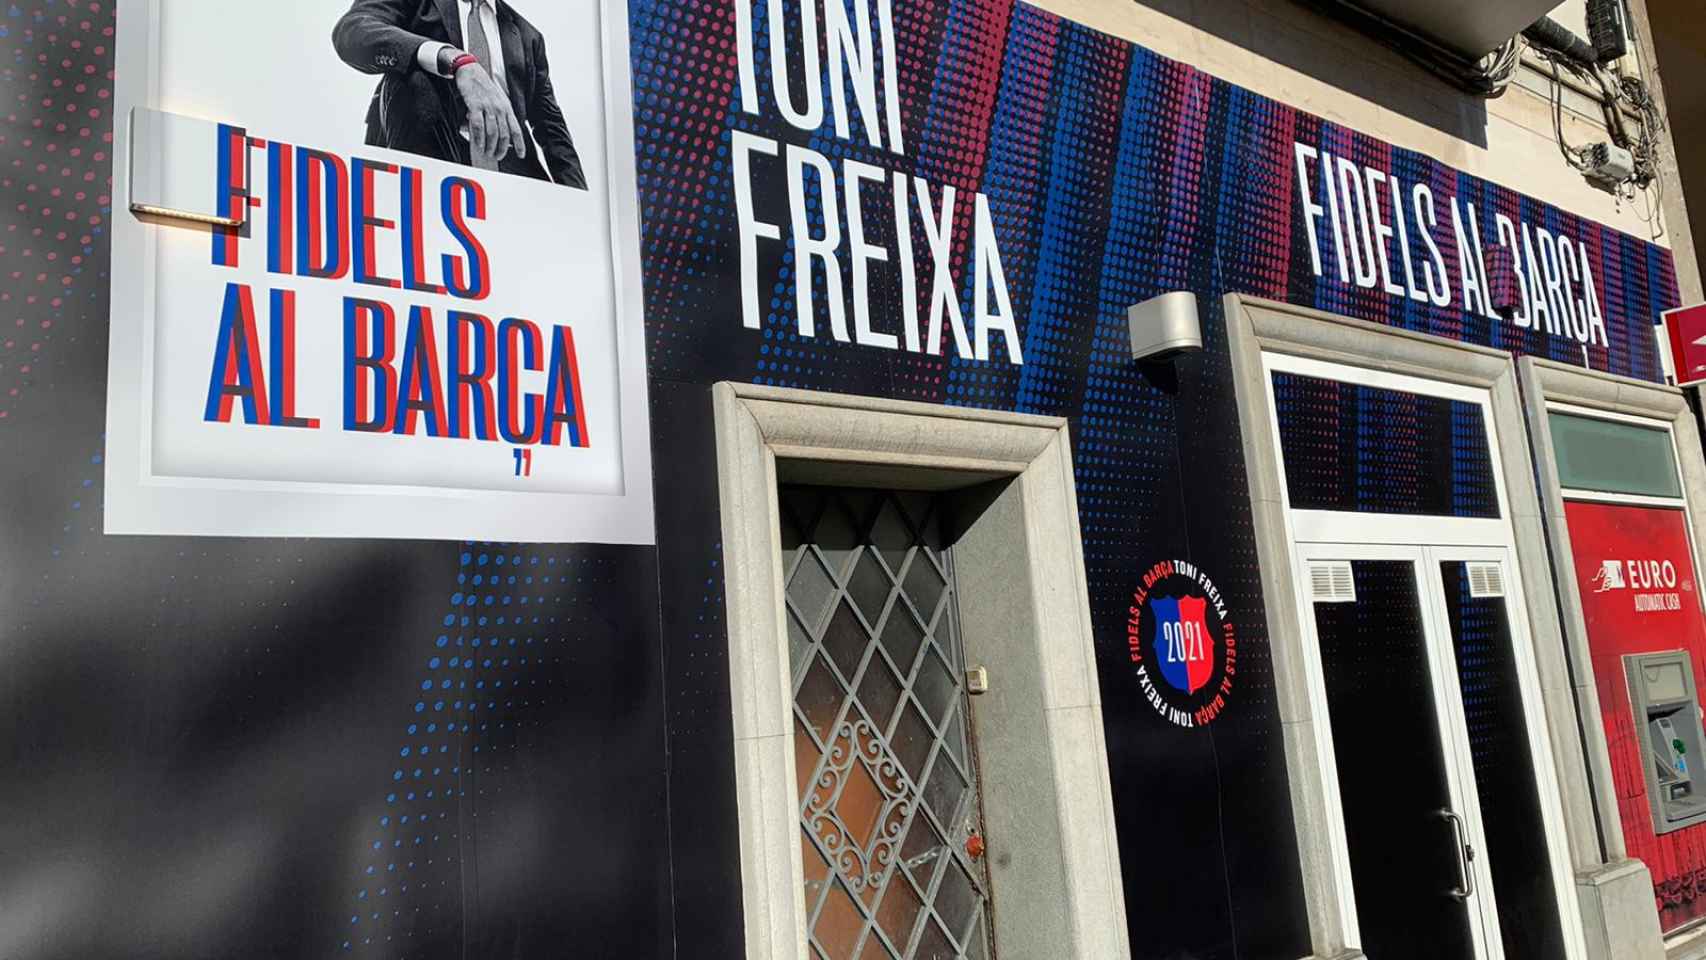 Esta es la sede de la candidatura de Toni Freixa, muy próxima al Camp Nou / CM